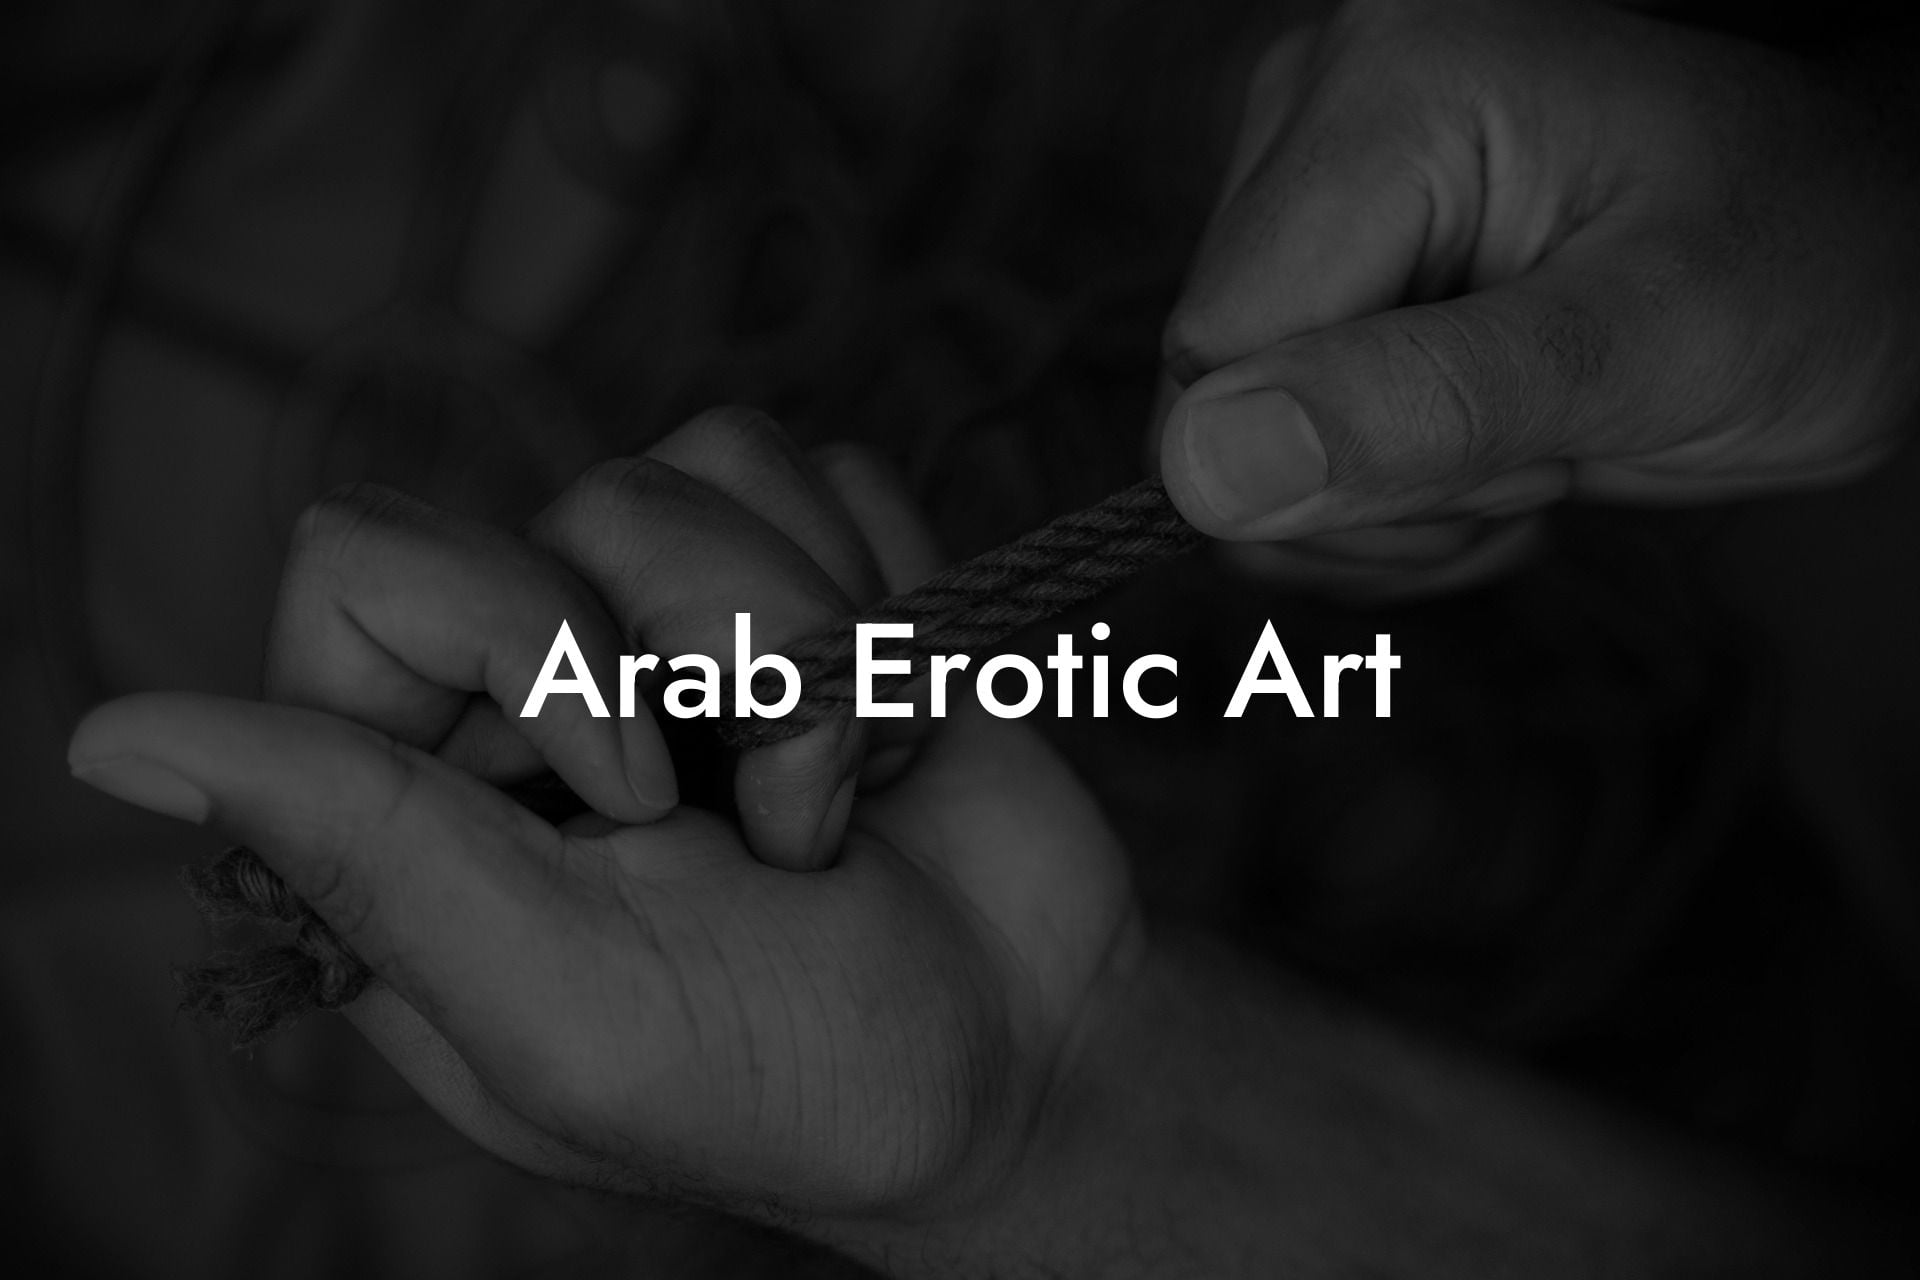 Arab Erotic Art